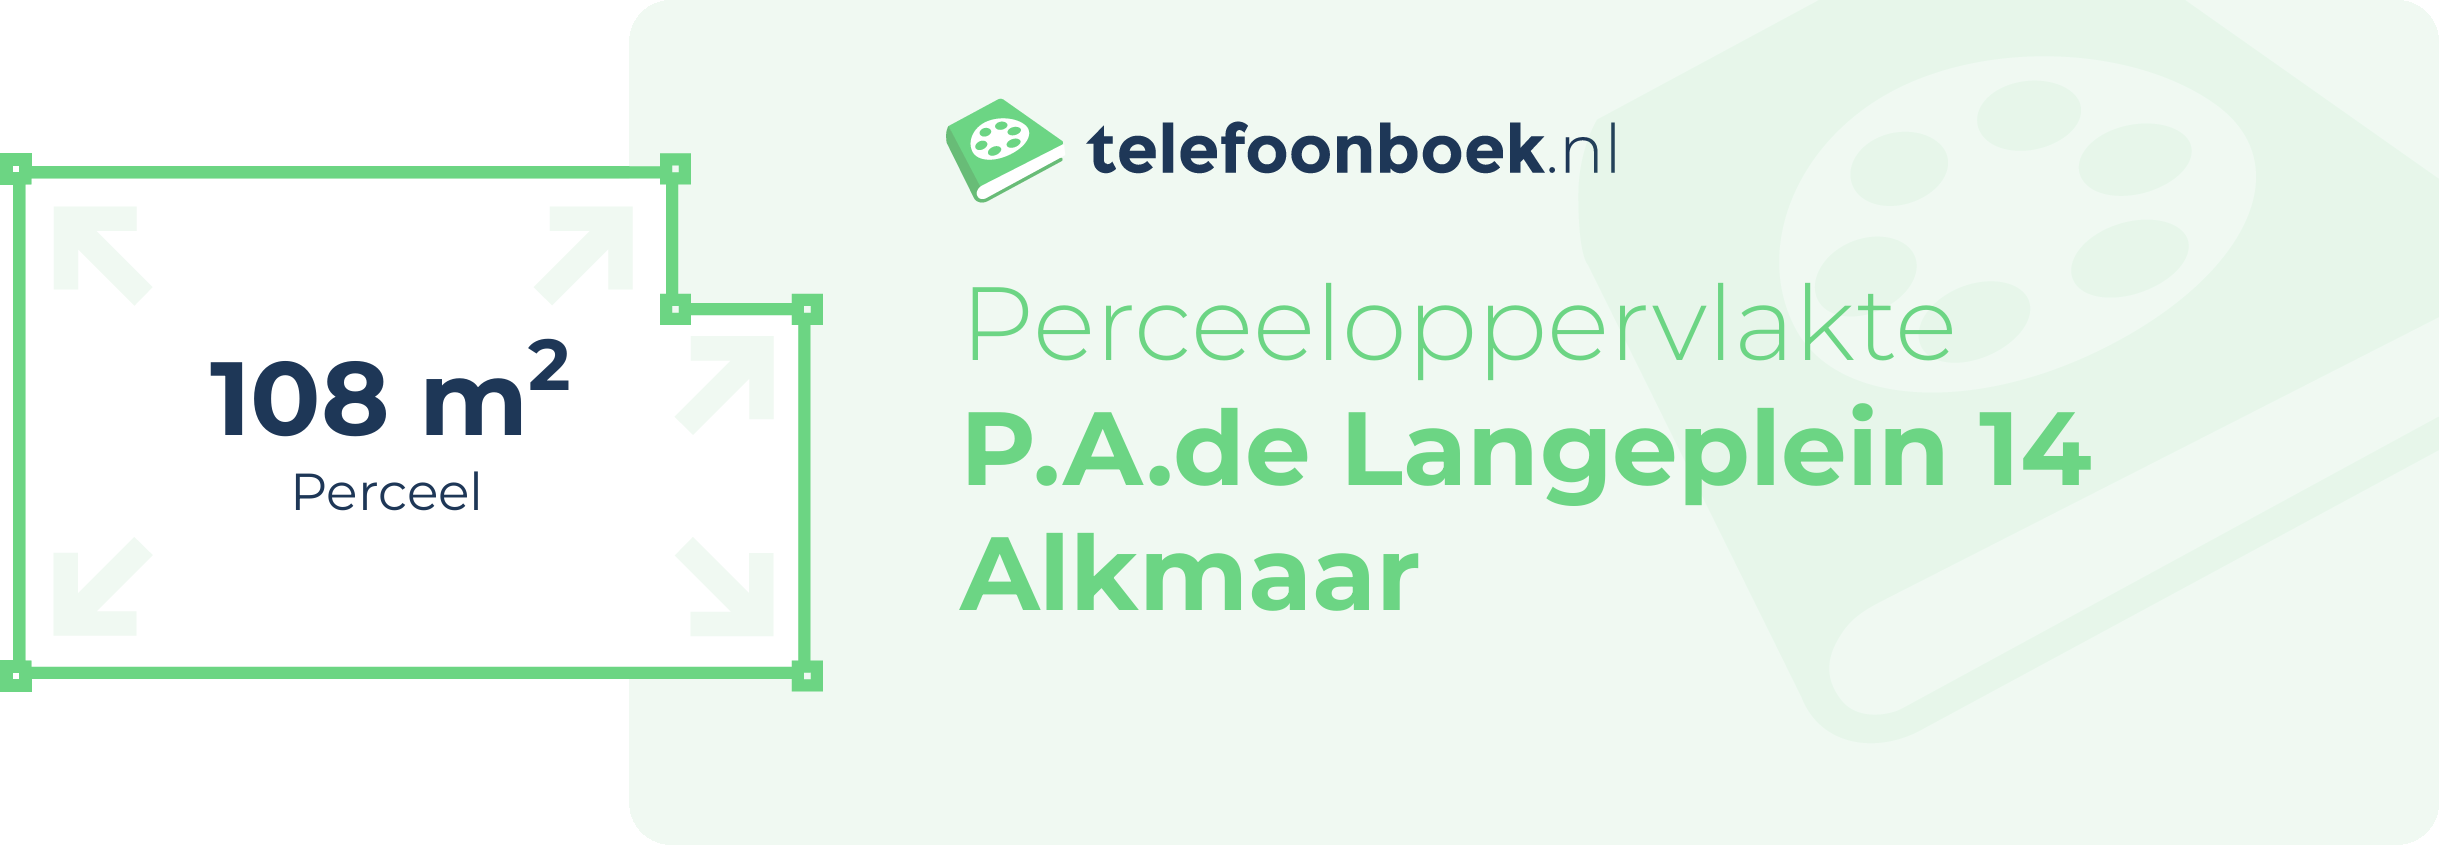 Perceeloppervlakte P.A.de Langeplein 14 Alkmaar